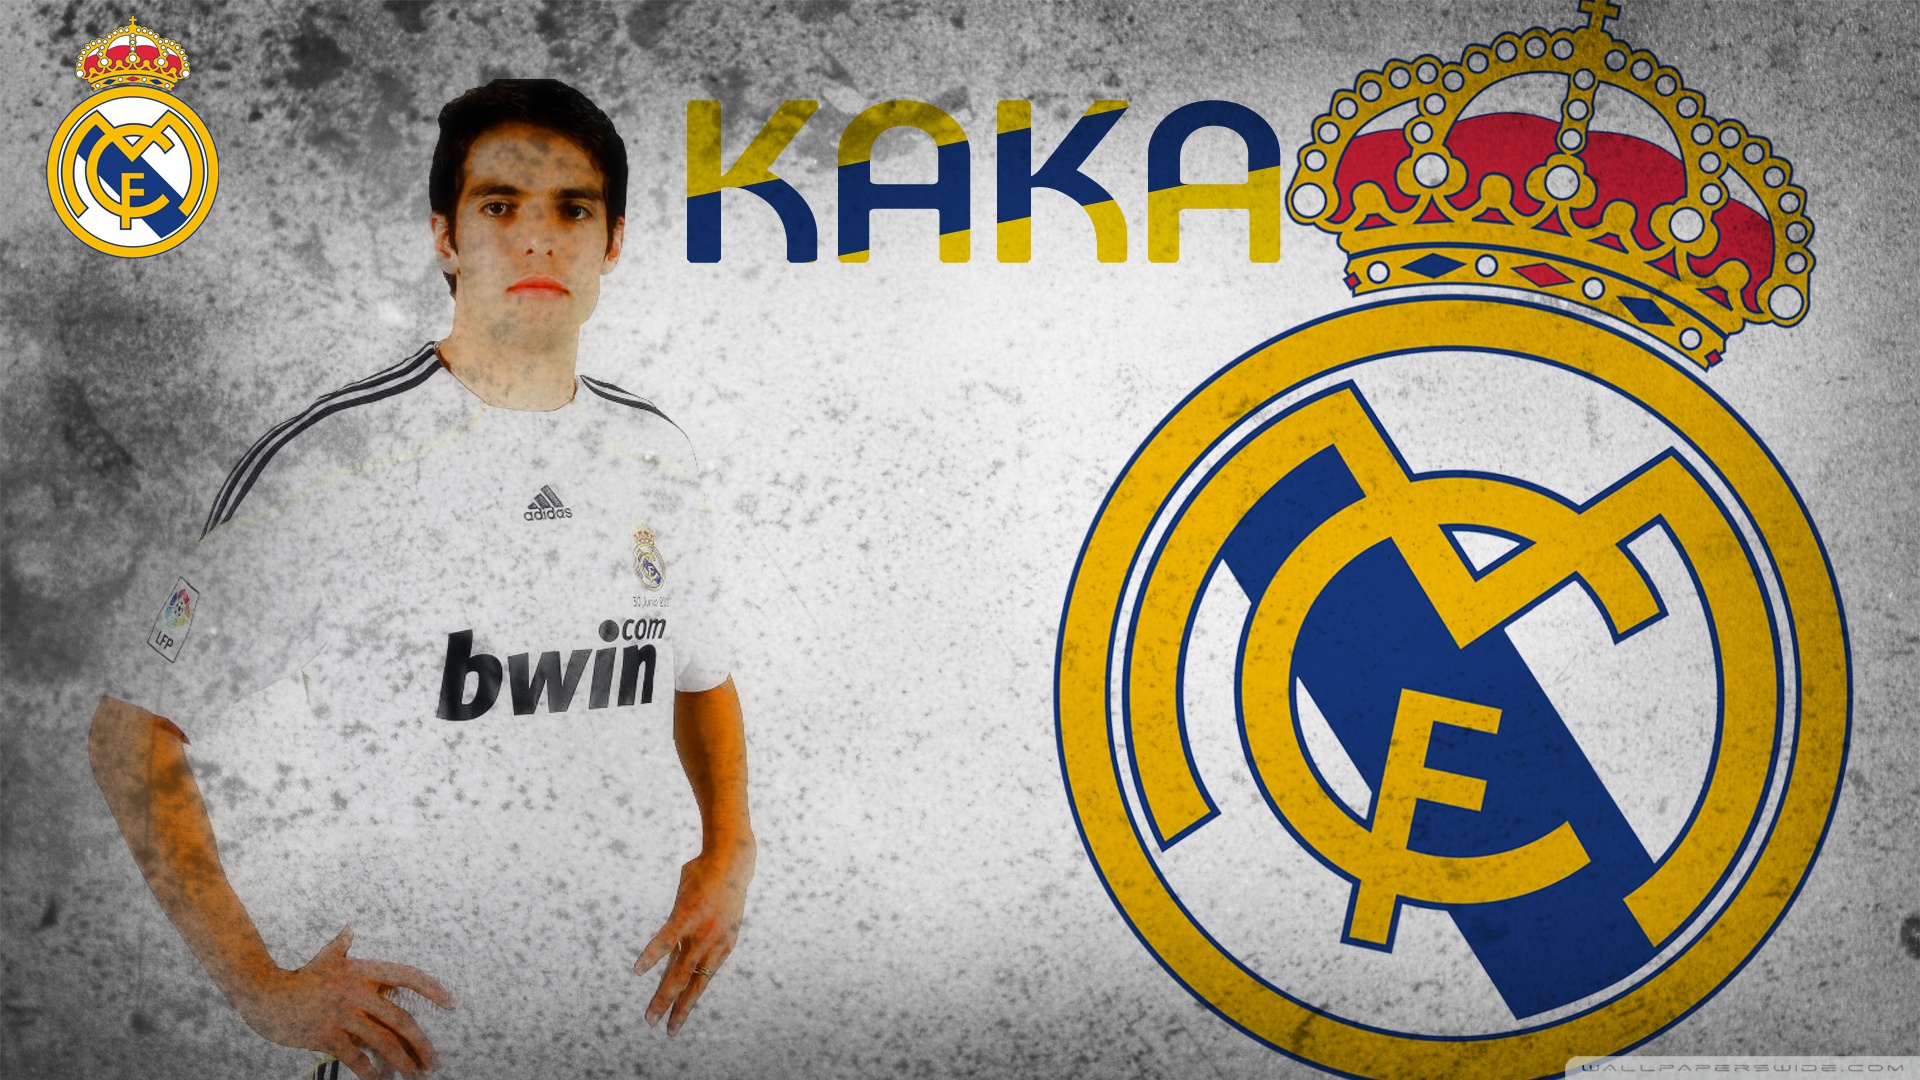 Kaka Real Madrid HD Desktop Wallpaper Widescreen High